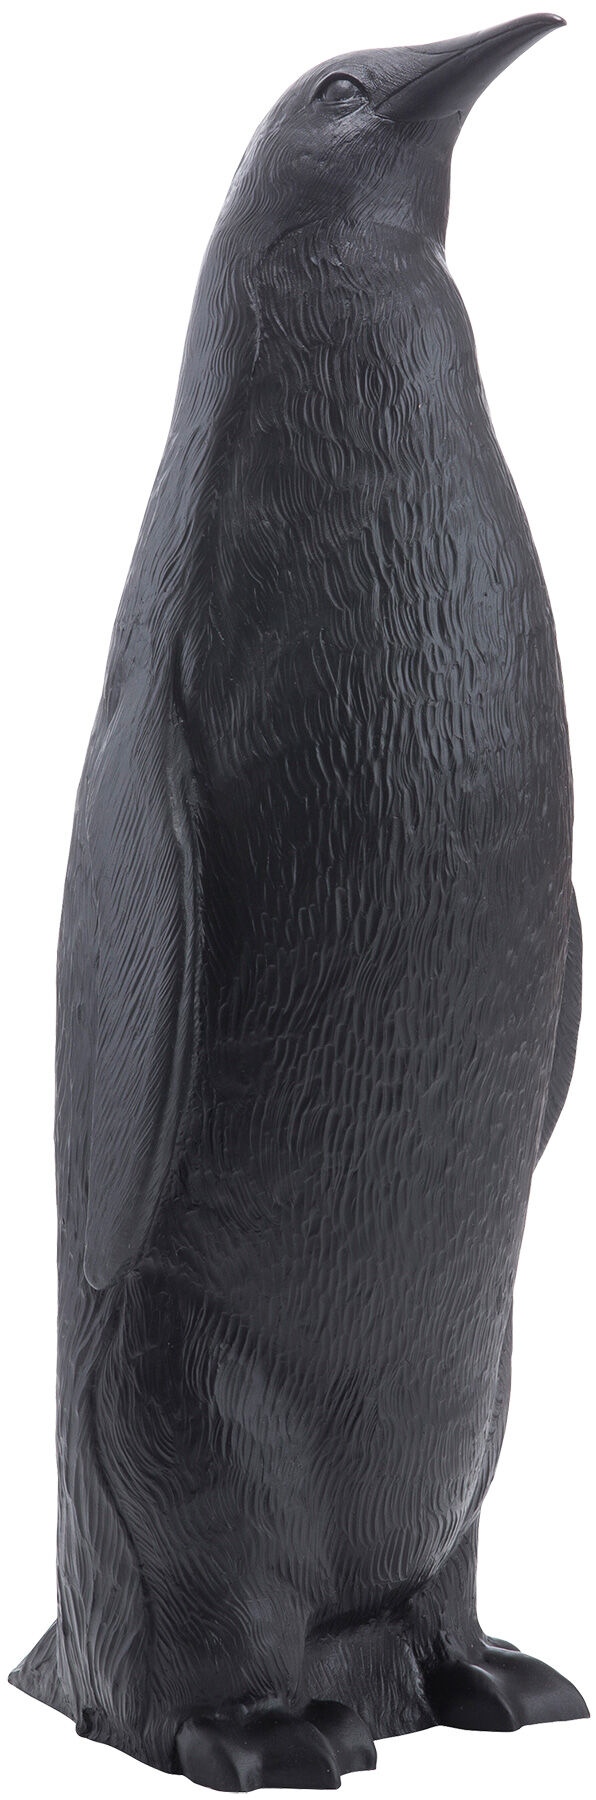 Sculptuur "Penguin II Upright" (2006), zwarte versie von Ottmar Hörl